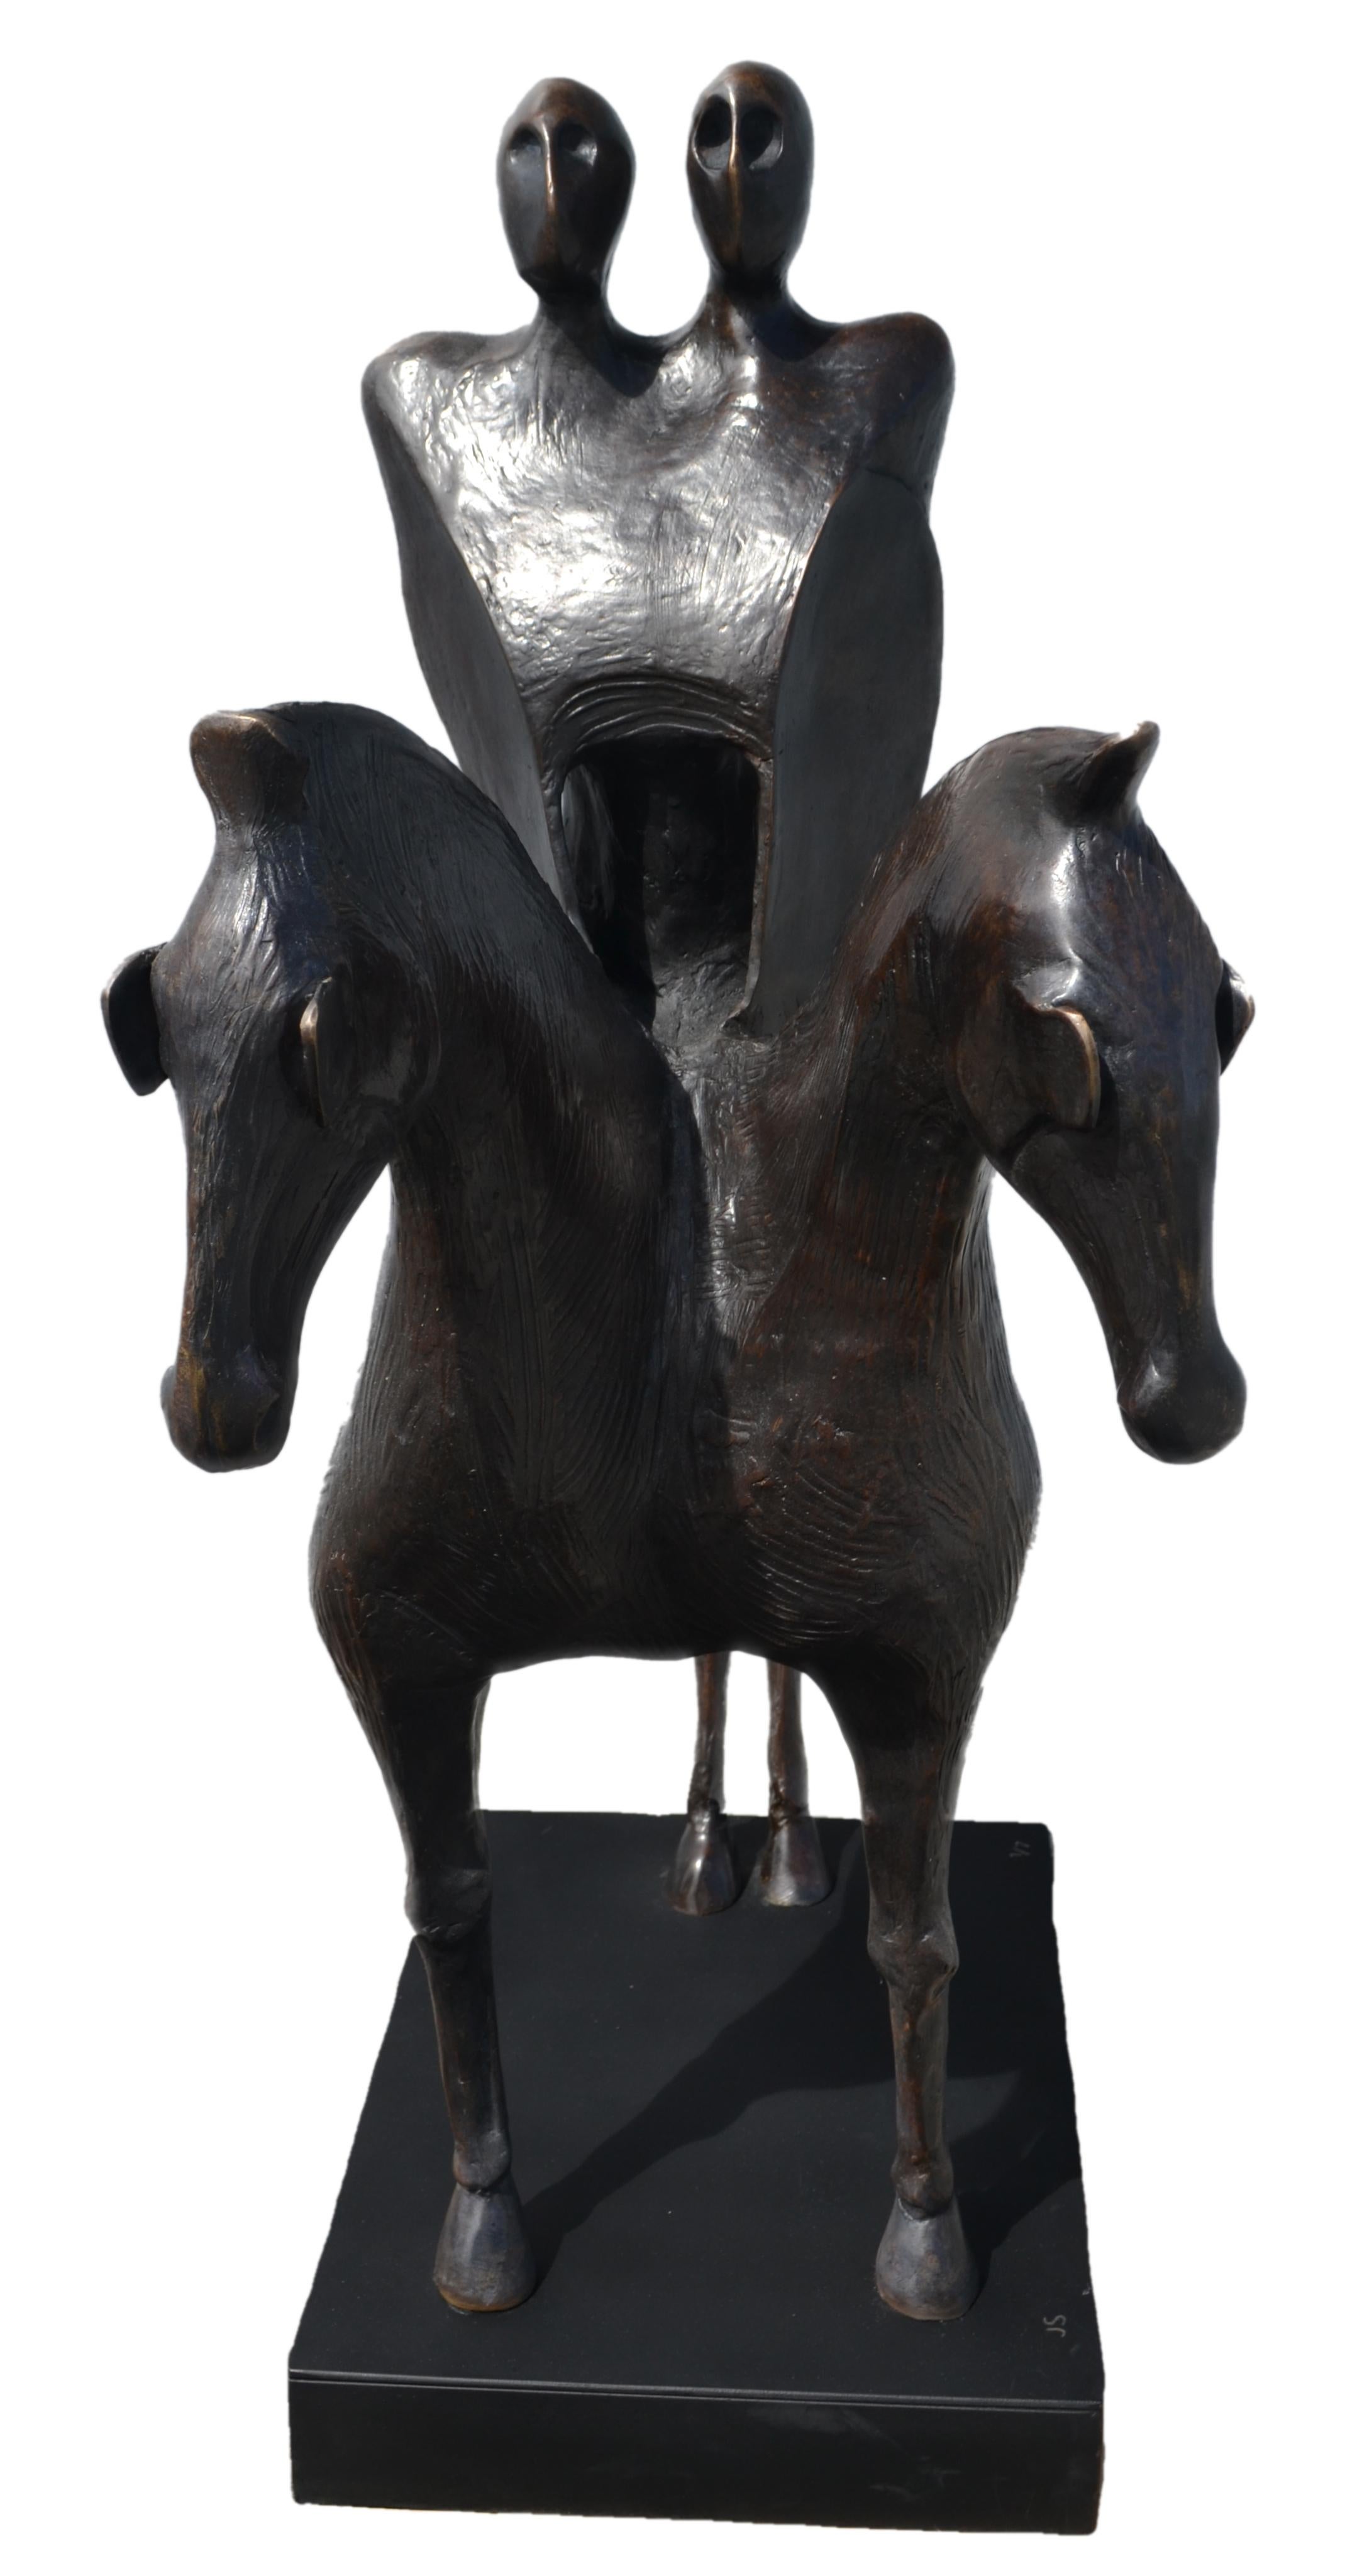 Jorge Segu, Falsos Heroes en Caballos Mticos, Bronze, Auflage 1/7, 2010-2013 (Zeitgenössisch), Sculpture, von Jorge Seguí 